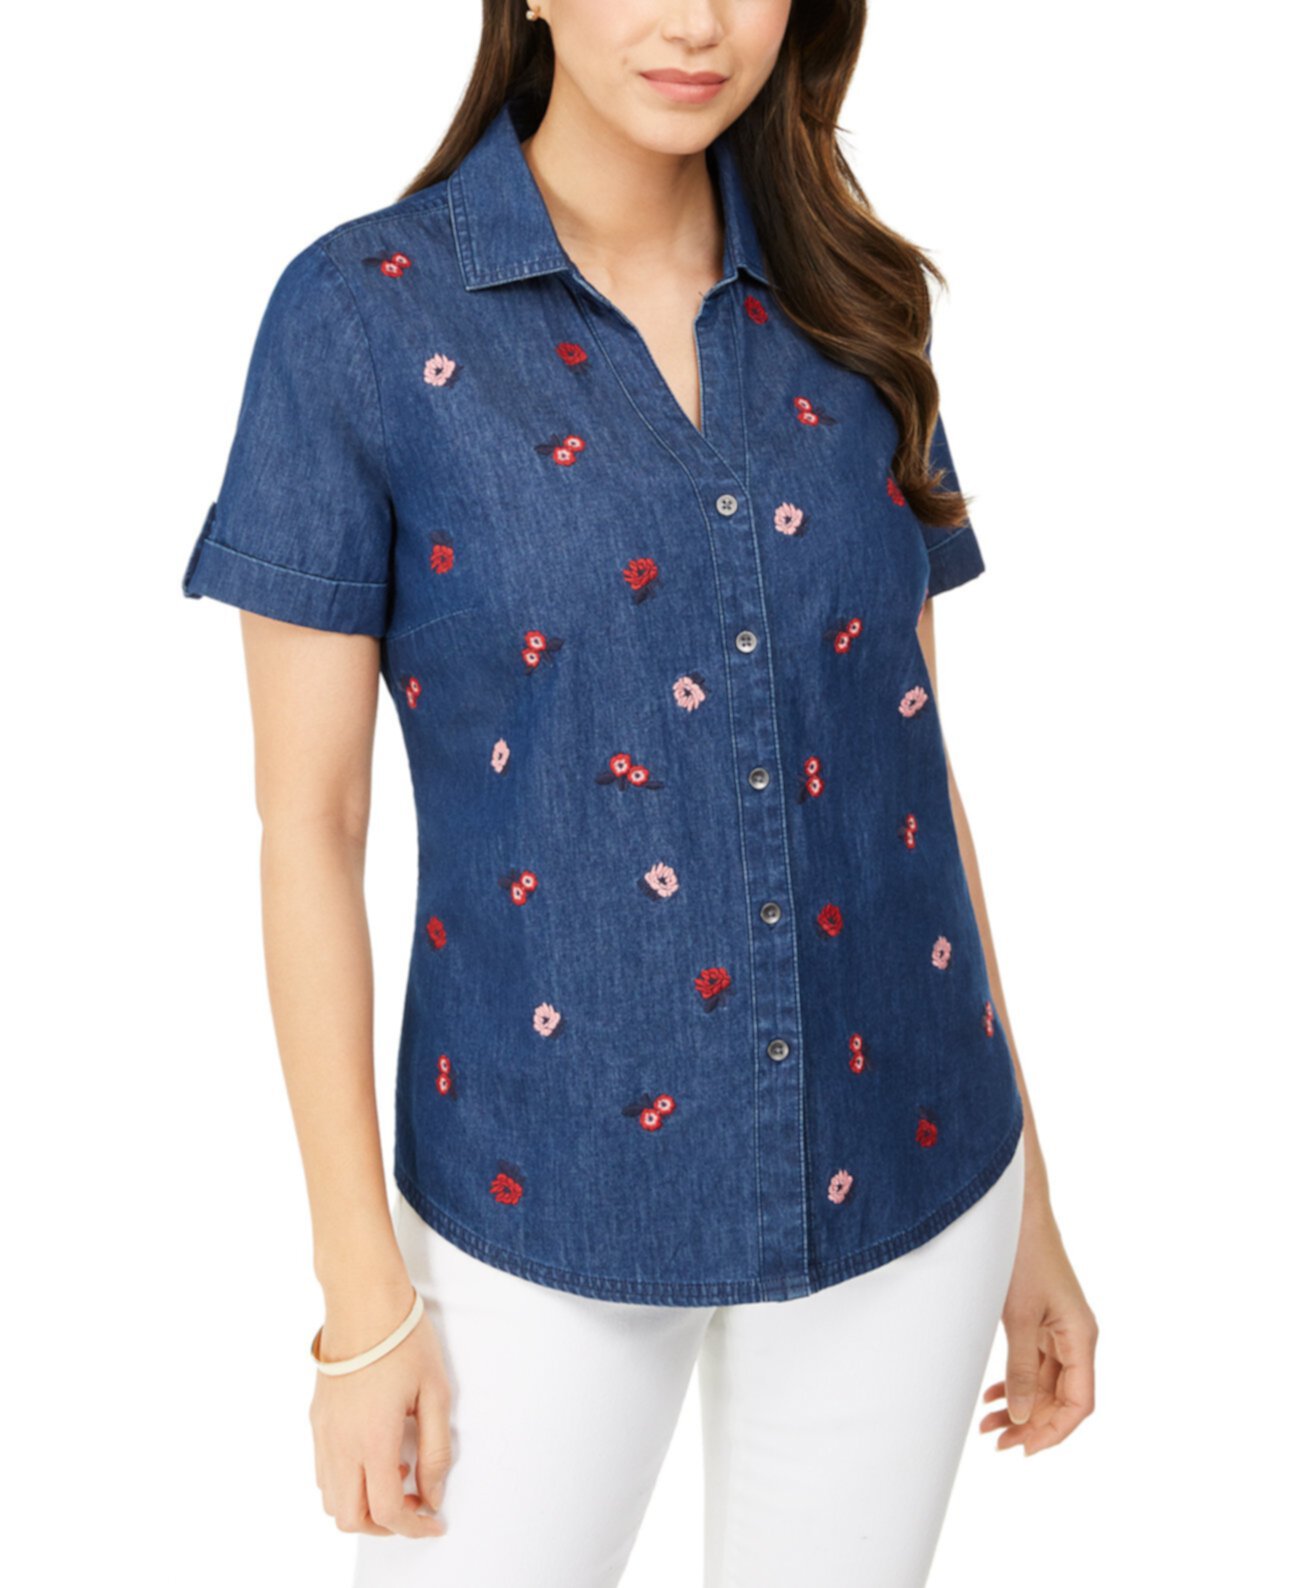 Рубашка большого размера с воротником и вышивкой, созданная для Macy's Karen Scott